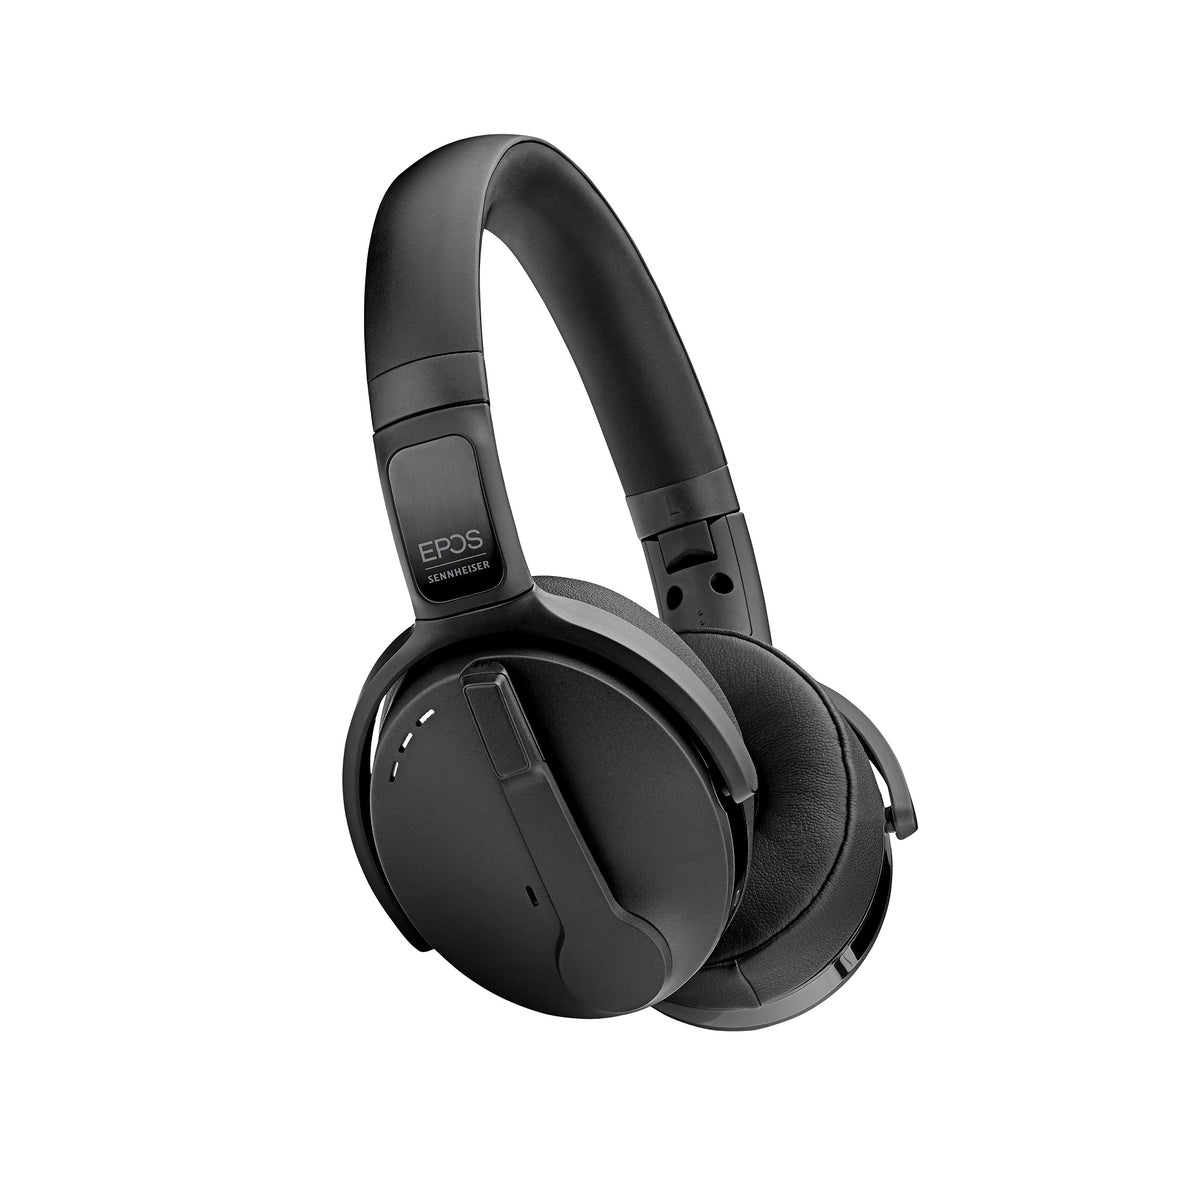 EPOS headphones SENNHEISER ADAPT 563 Bluetooth Black